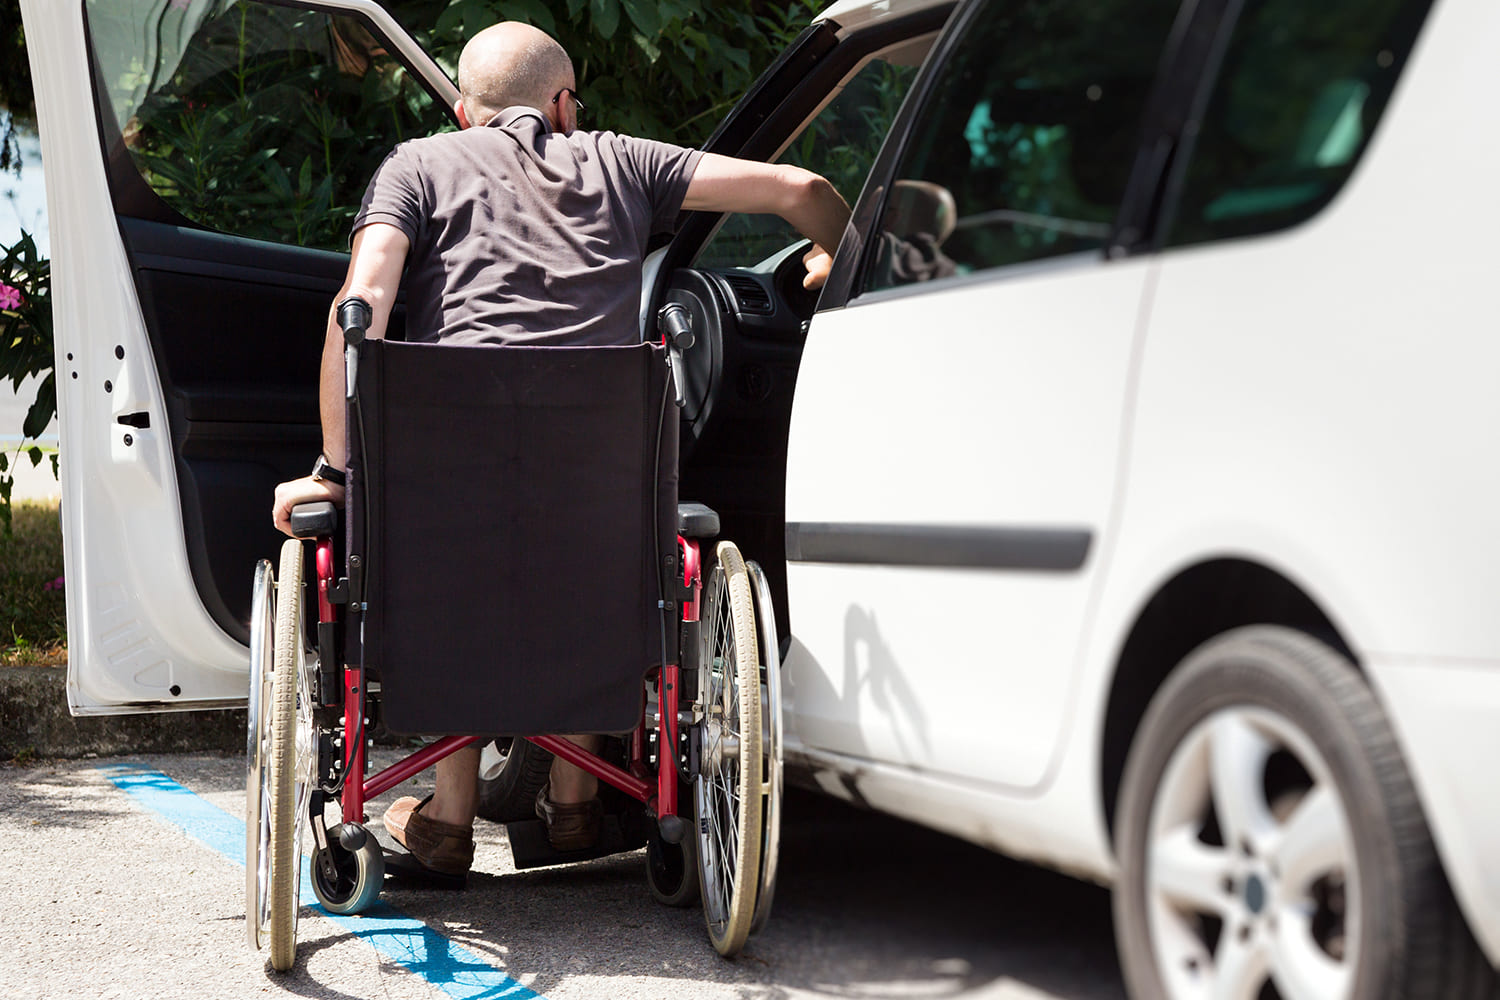 Pessoa calva, em cadeira de rodas, fazendo transferência da cadeira para o carro, ilustra matéria "Versão digital do cartão de estacionamento".